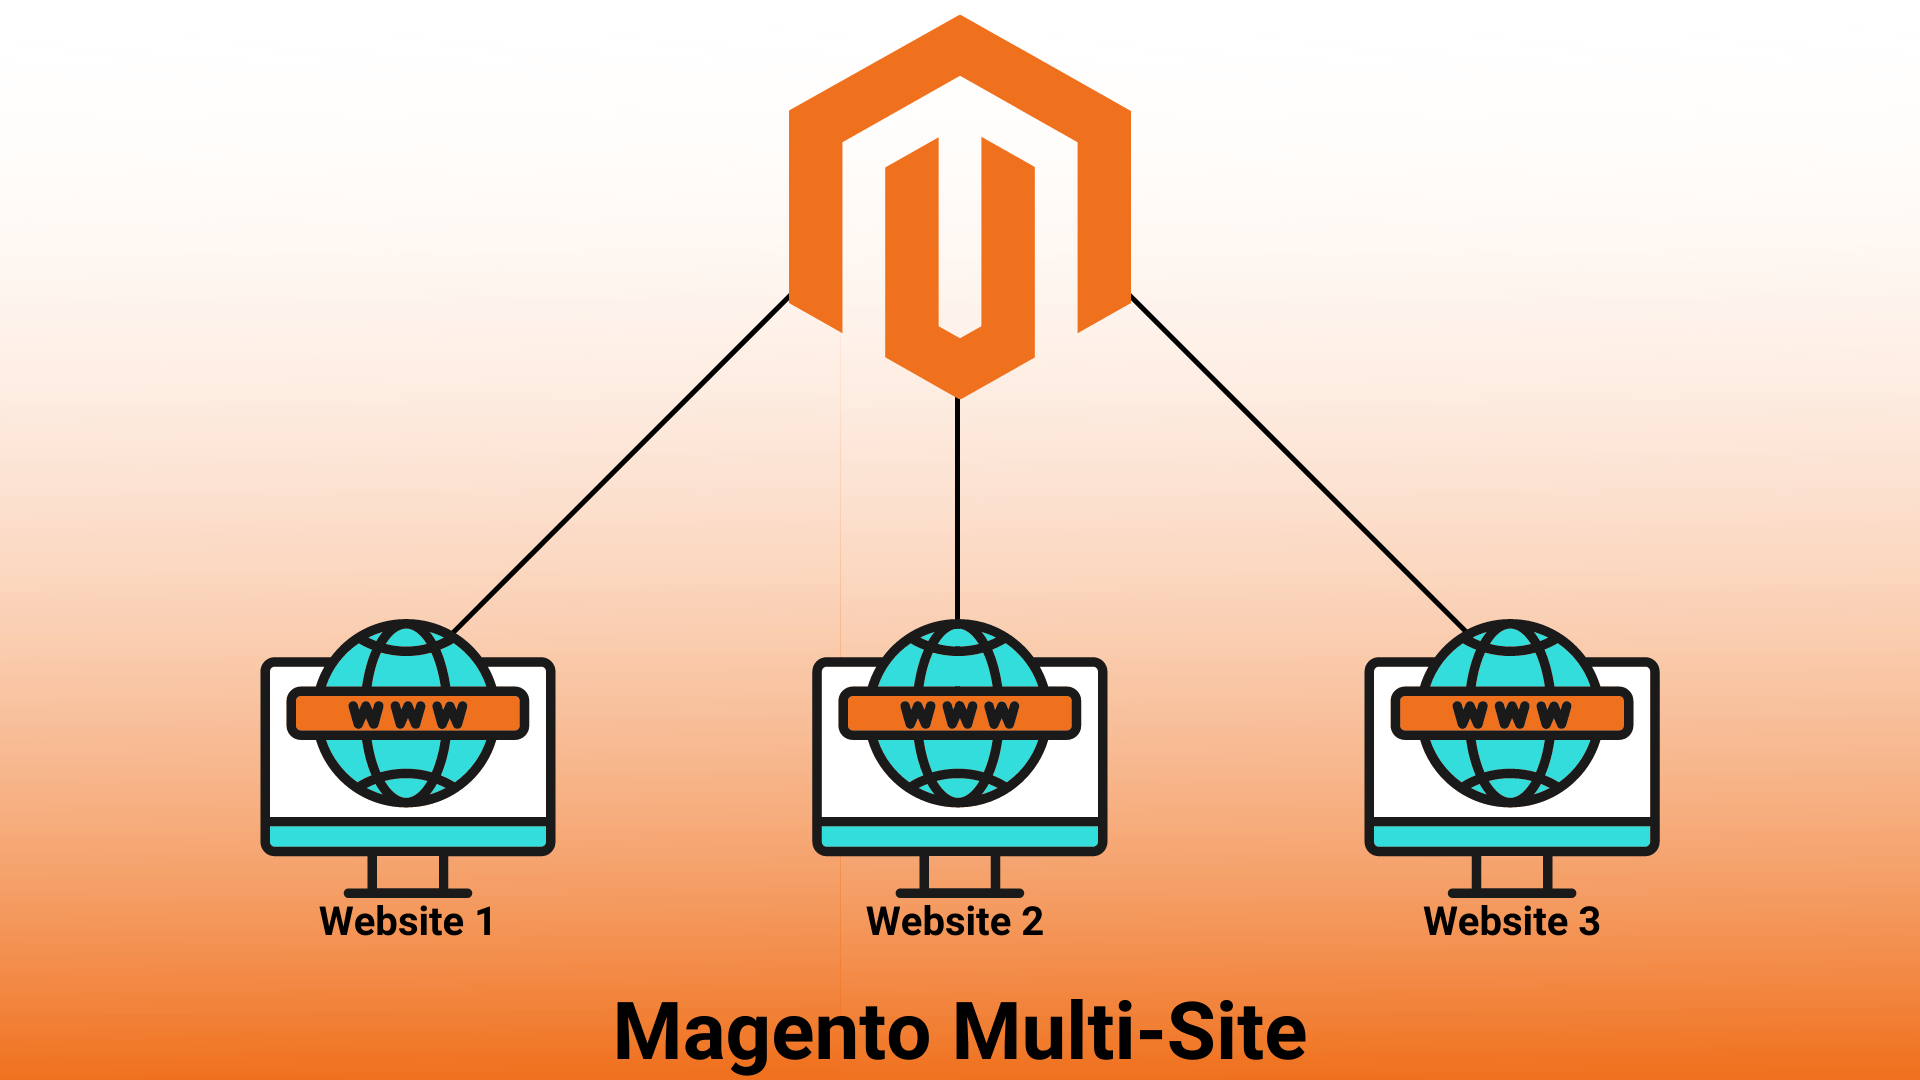 Magento Multi-Site